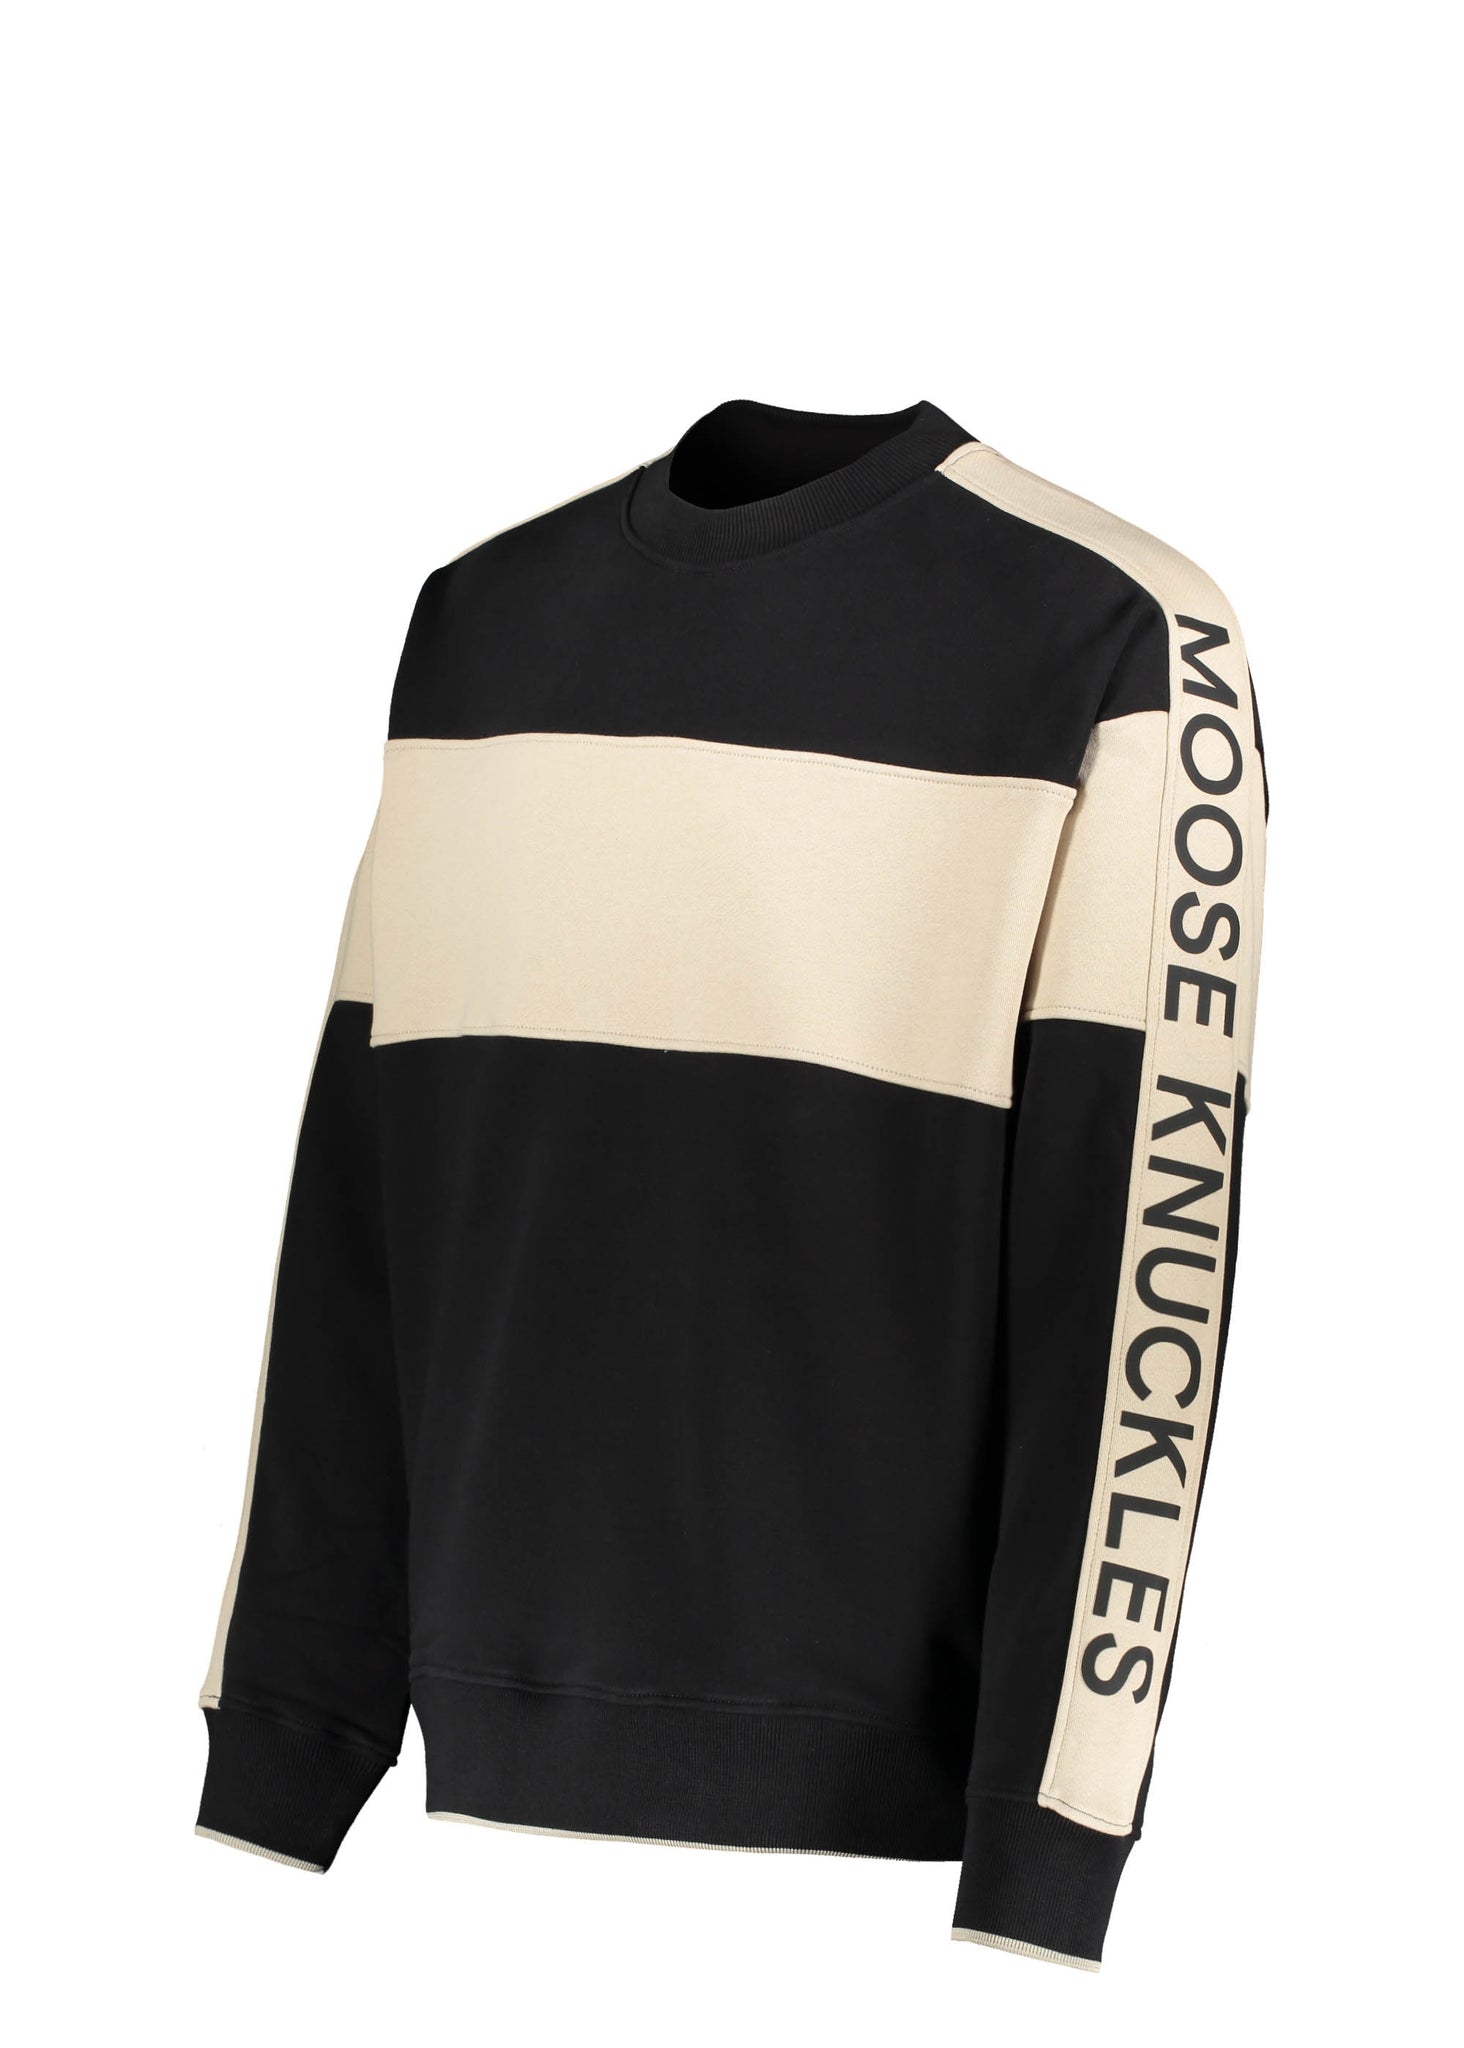 Moose Knuckles Wabasso Crew Neck Sweatshirt - Black